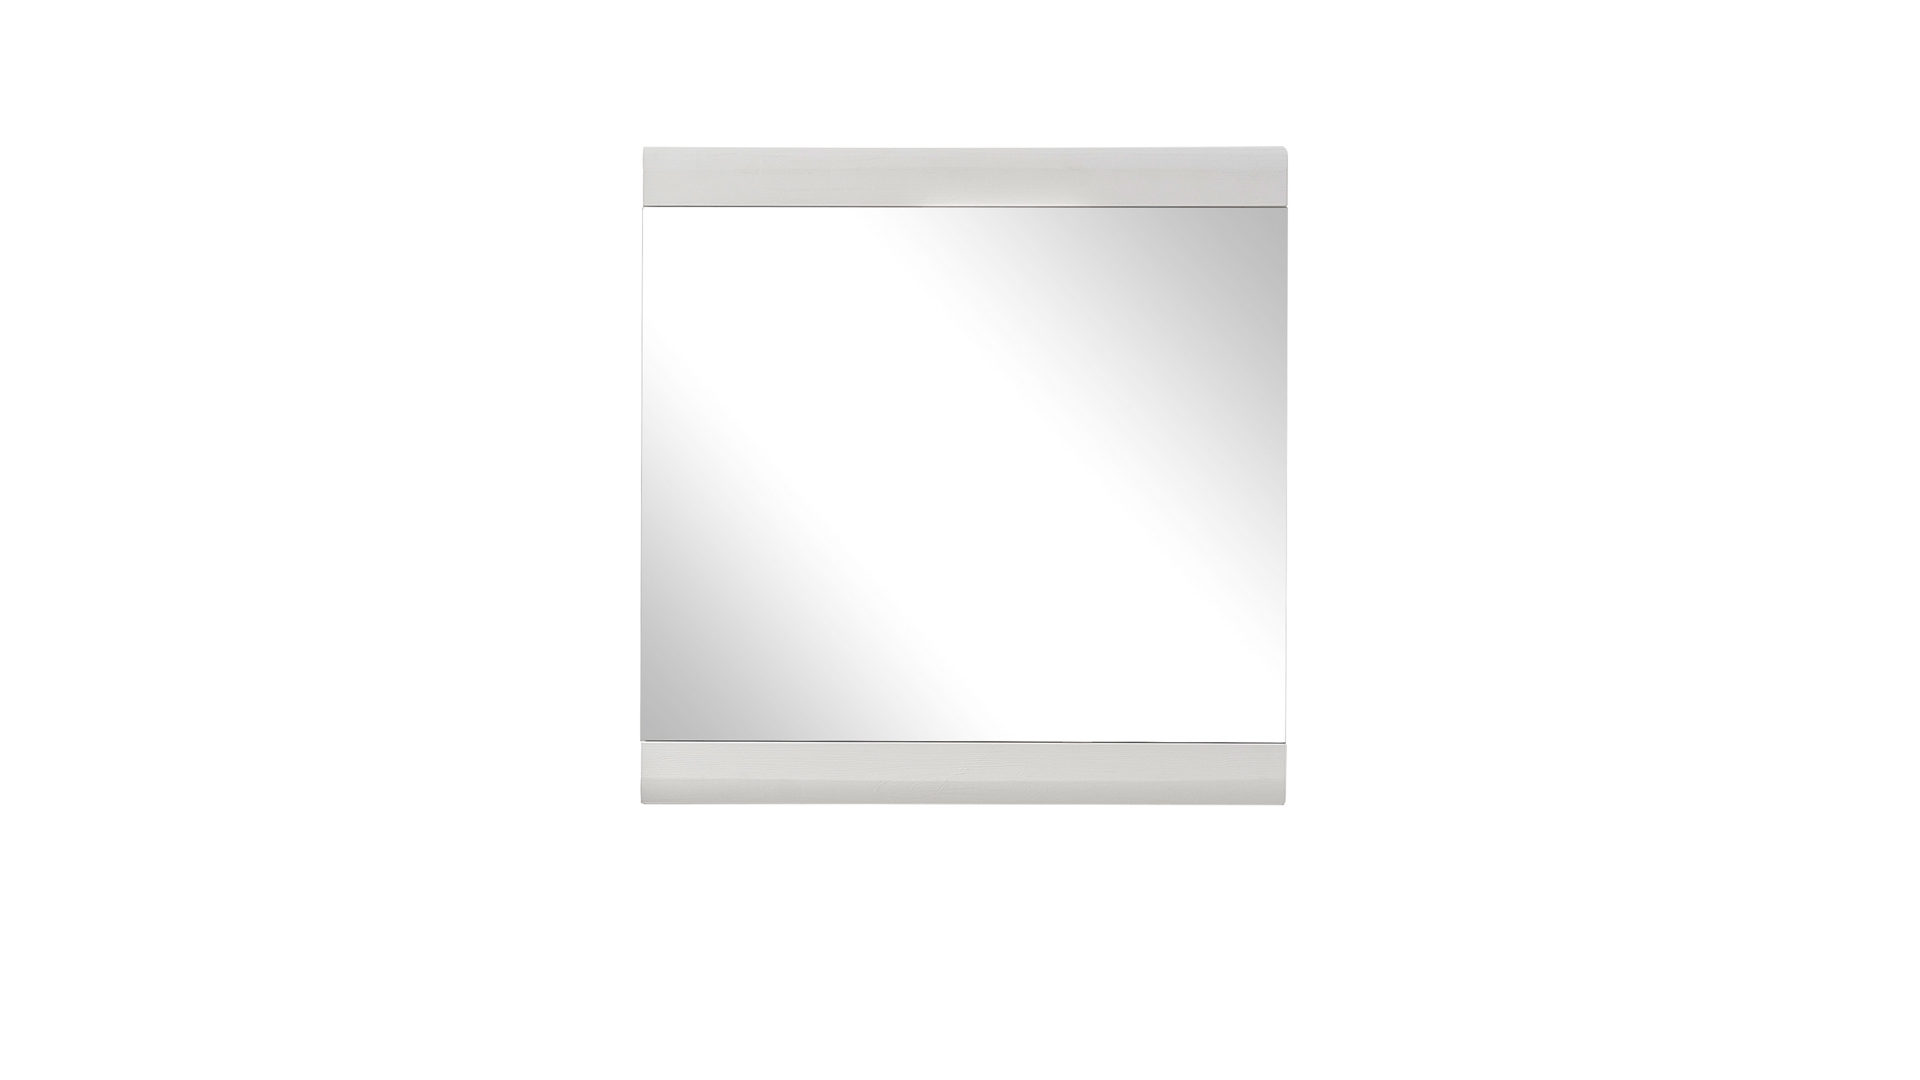 Wandspiegel Innostyle aus Spiegel in Weiß Garderobenspiegel bzw. Wandspiegel weiße Kunststoffoberflächen – ca. 84 x 86 cm